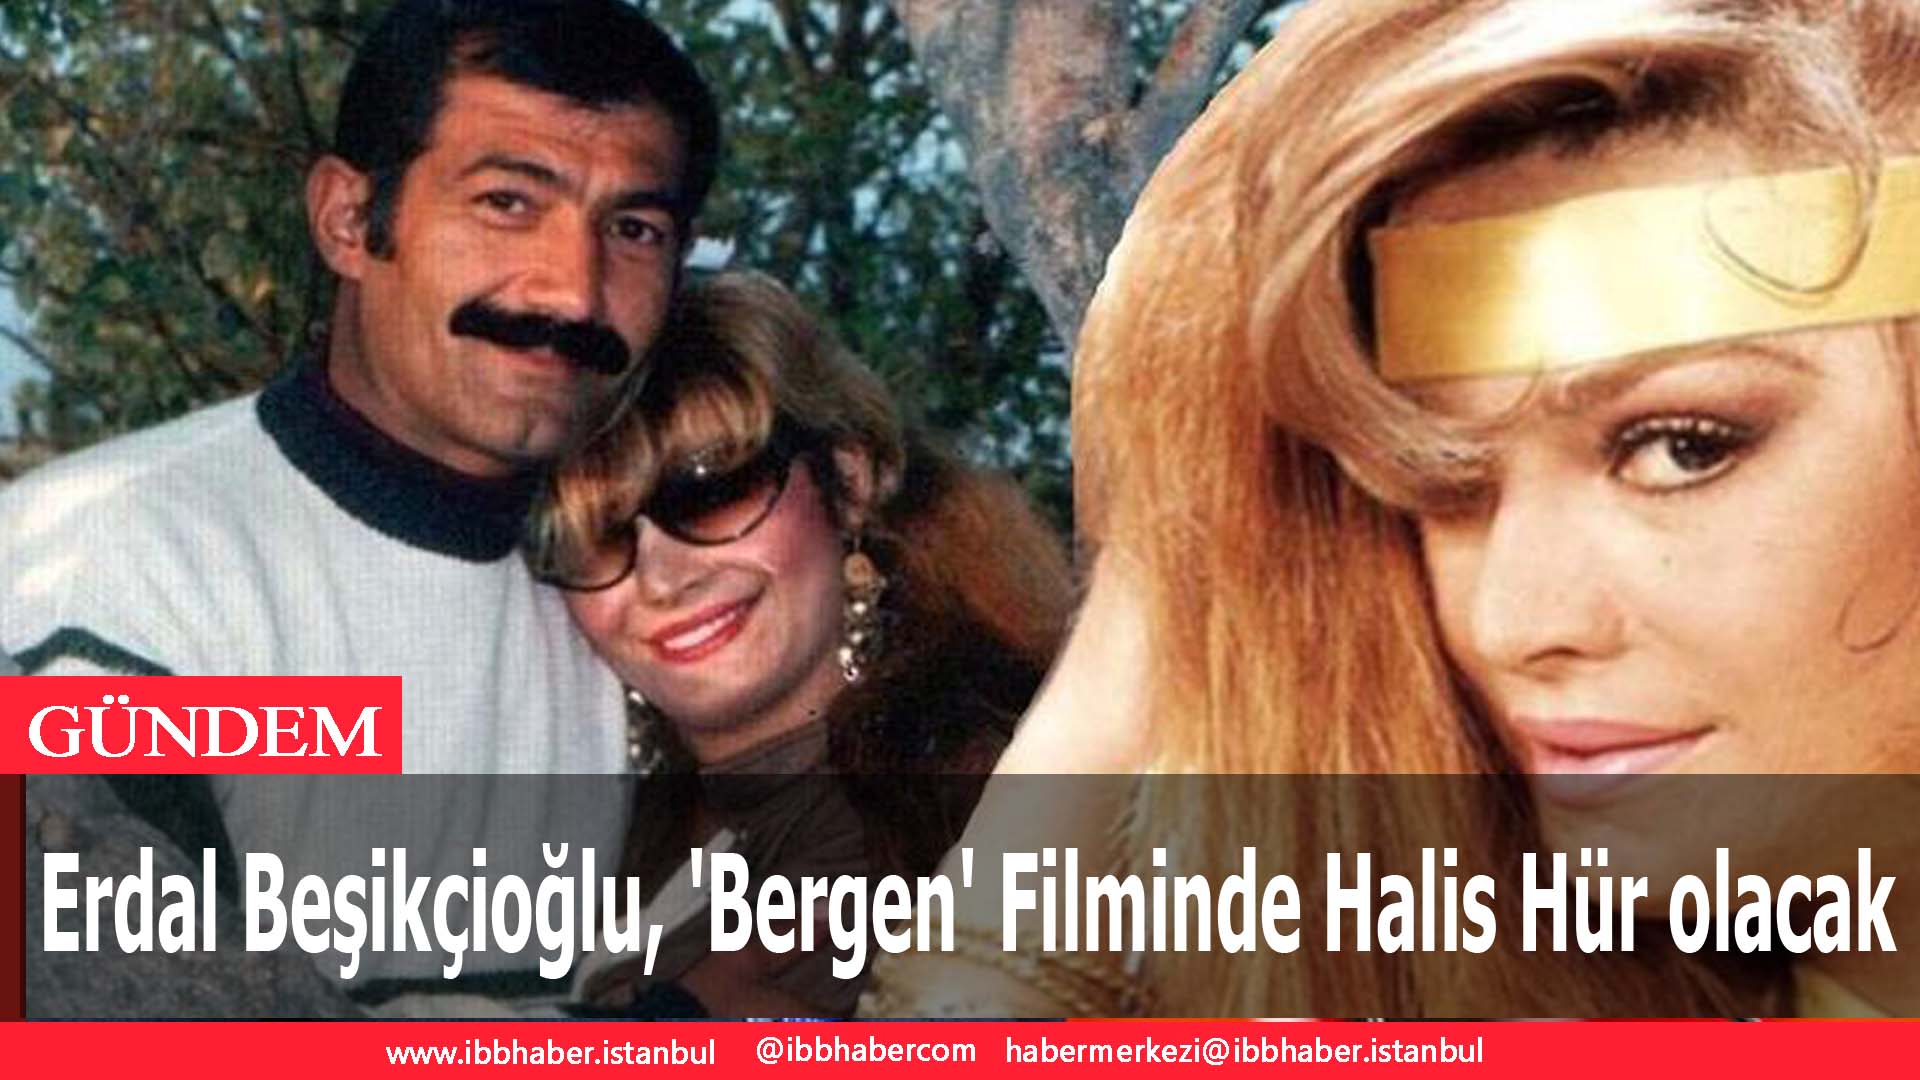 Erdal Beşikçioğlu, ‘Bergen’ Filminde Halis Hür olacak